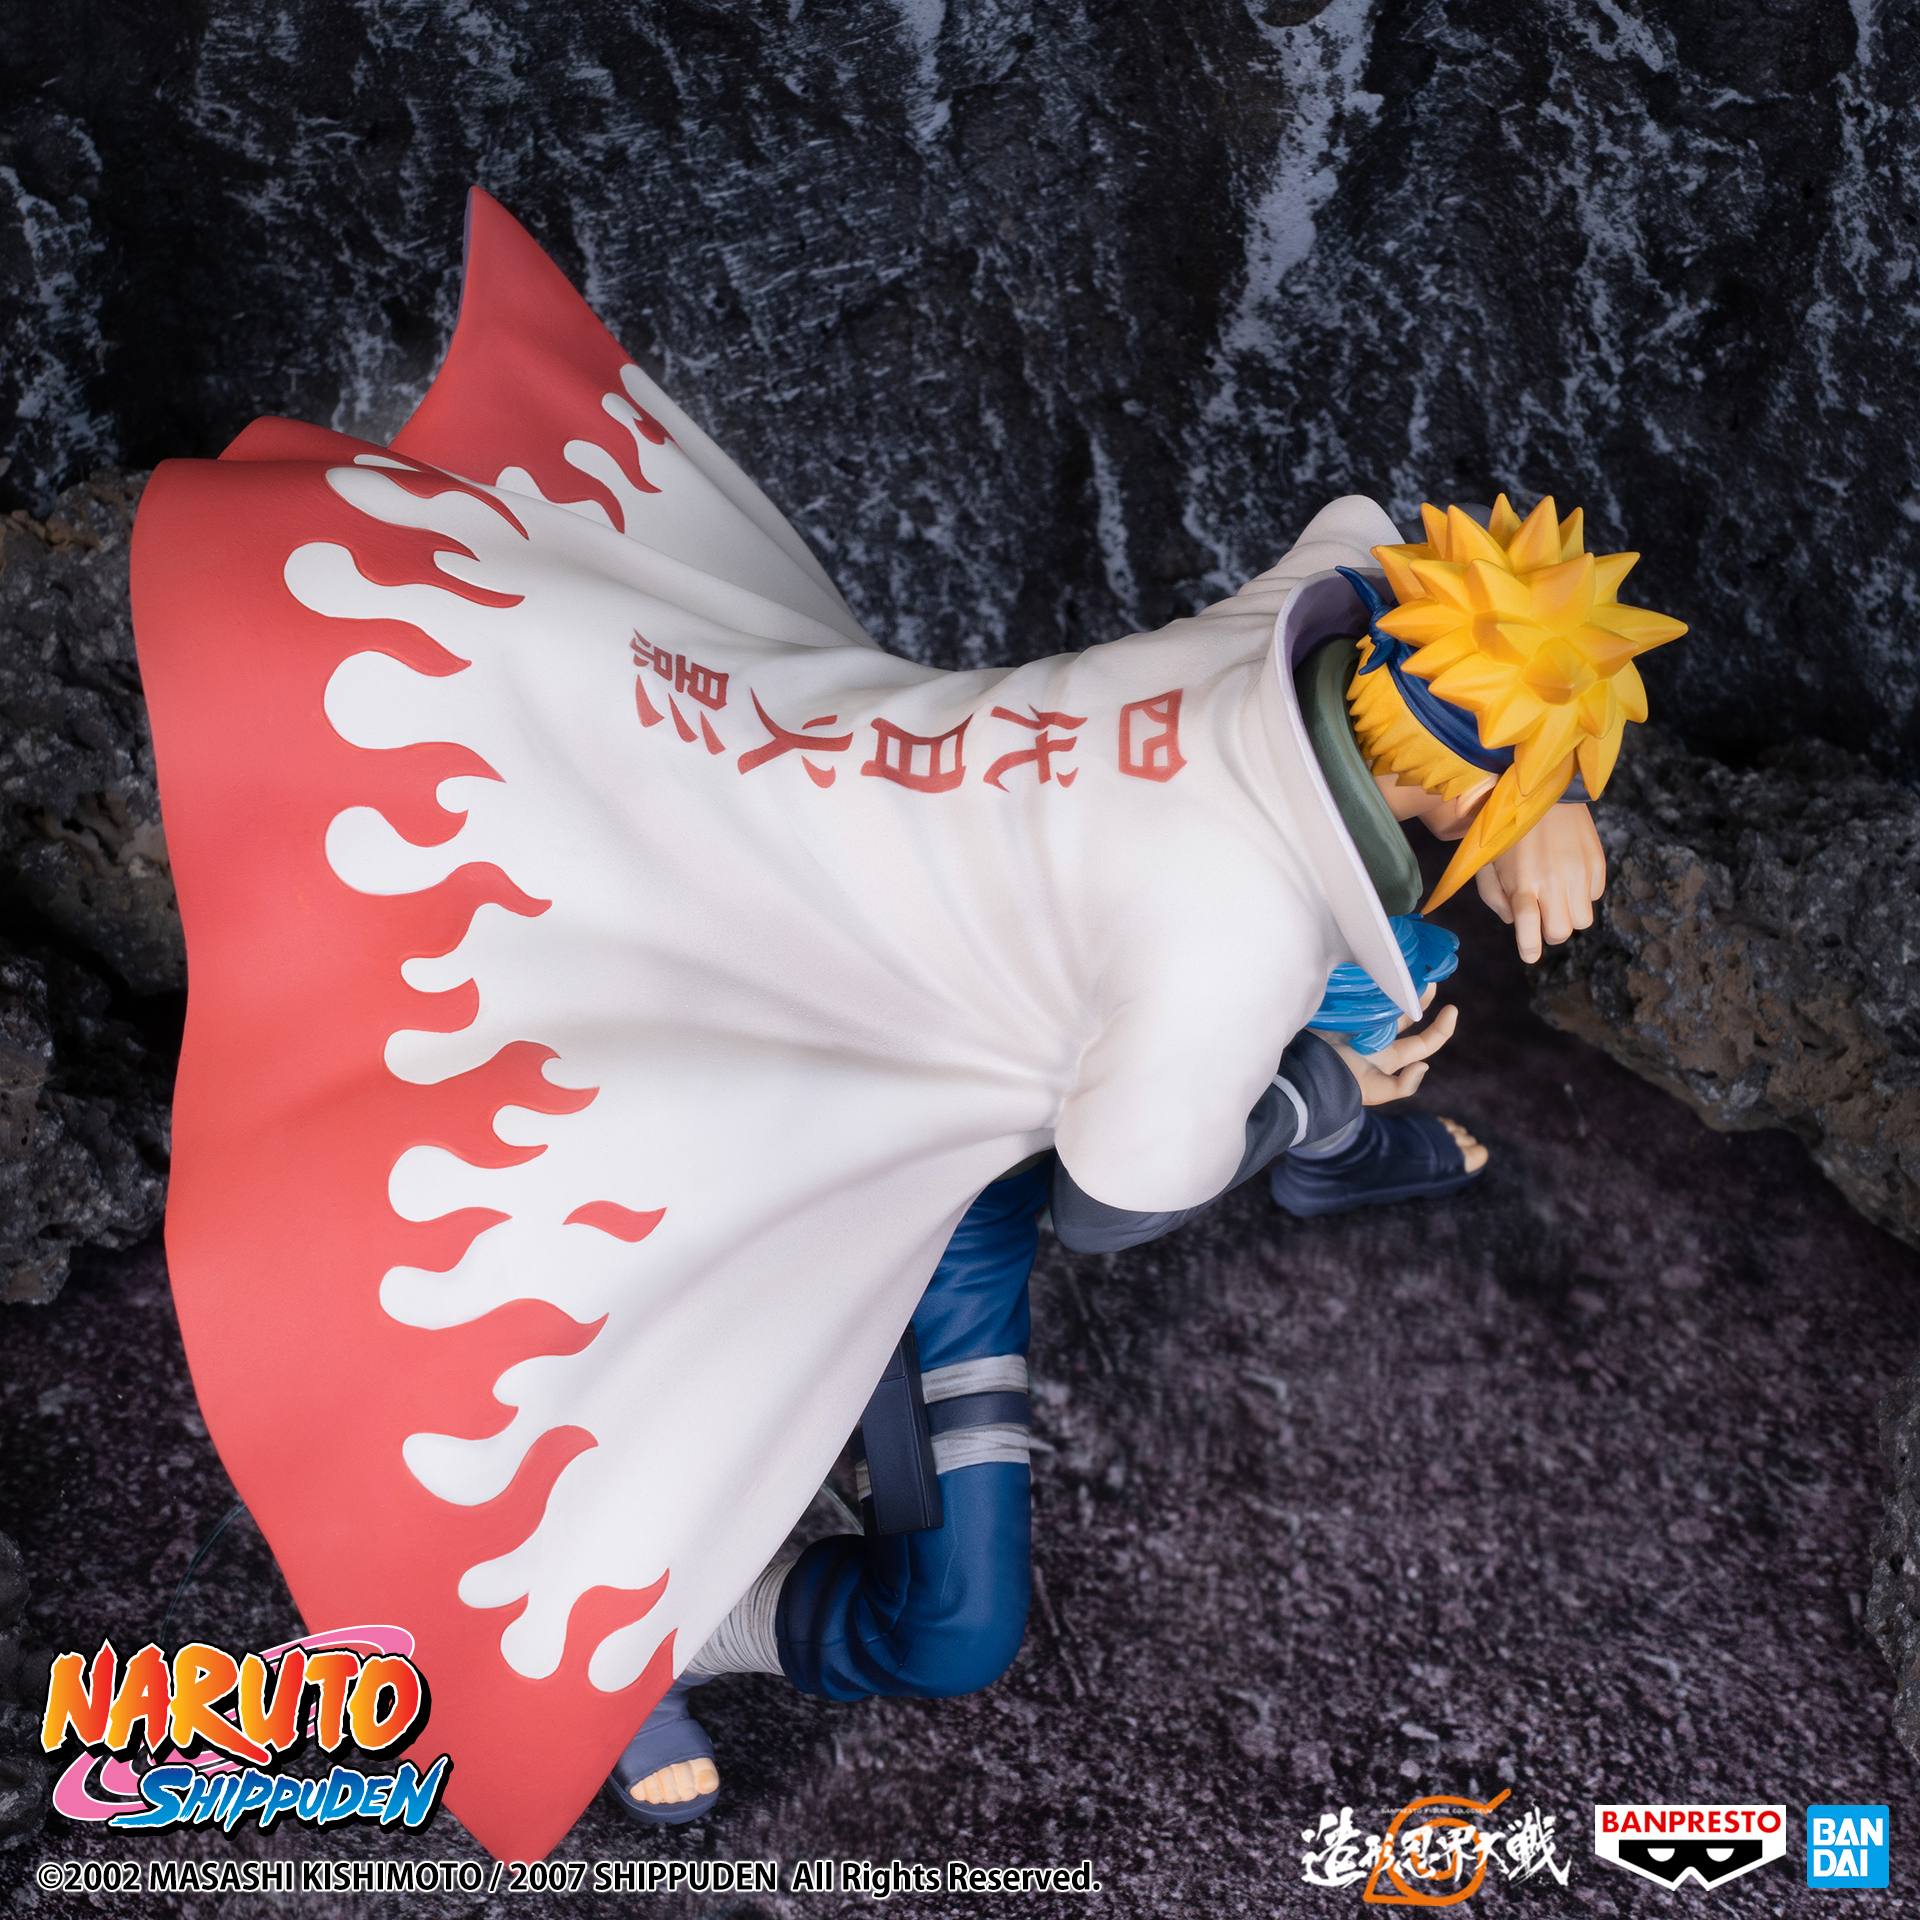 Naruto Shippuden Banpresto Figure Colosseum Namikaze Minato